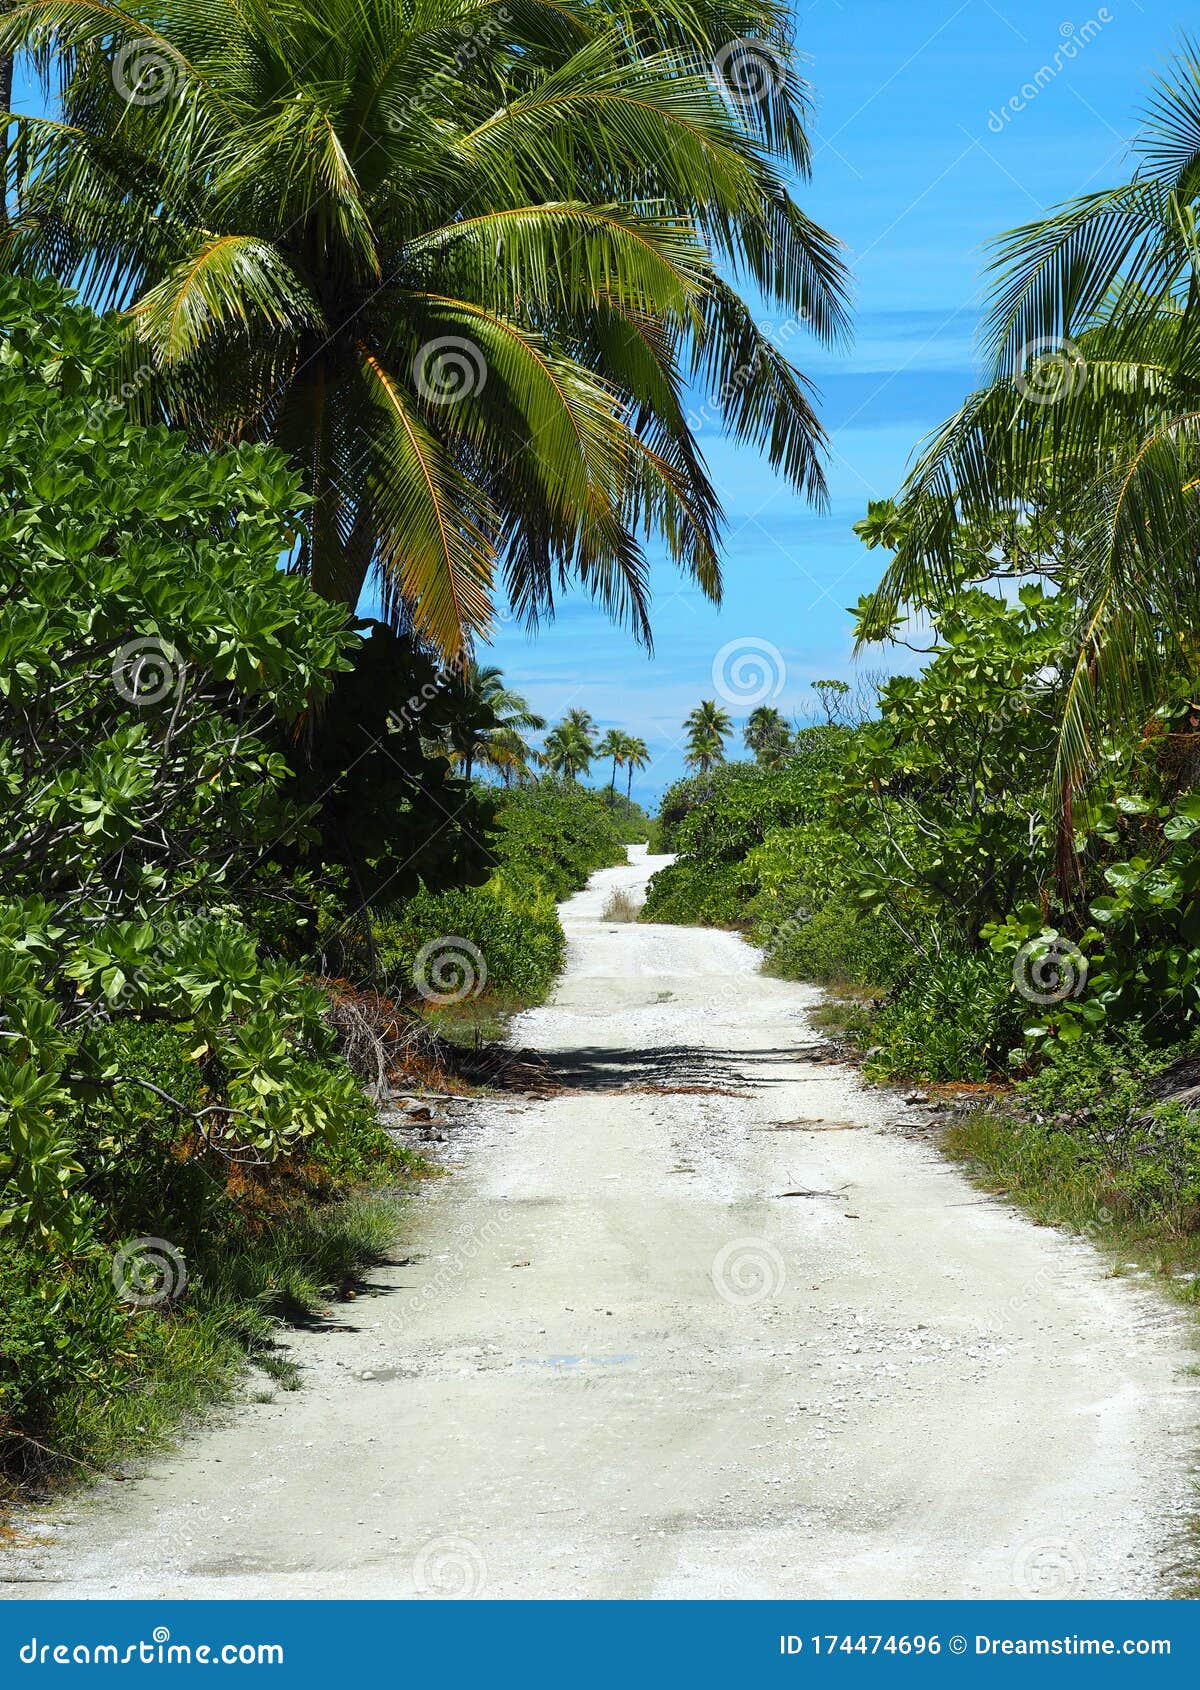 french polynesia - fakarava: lonely street